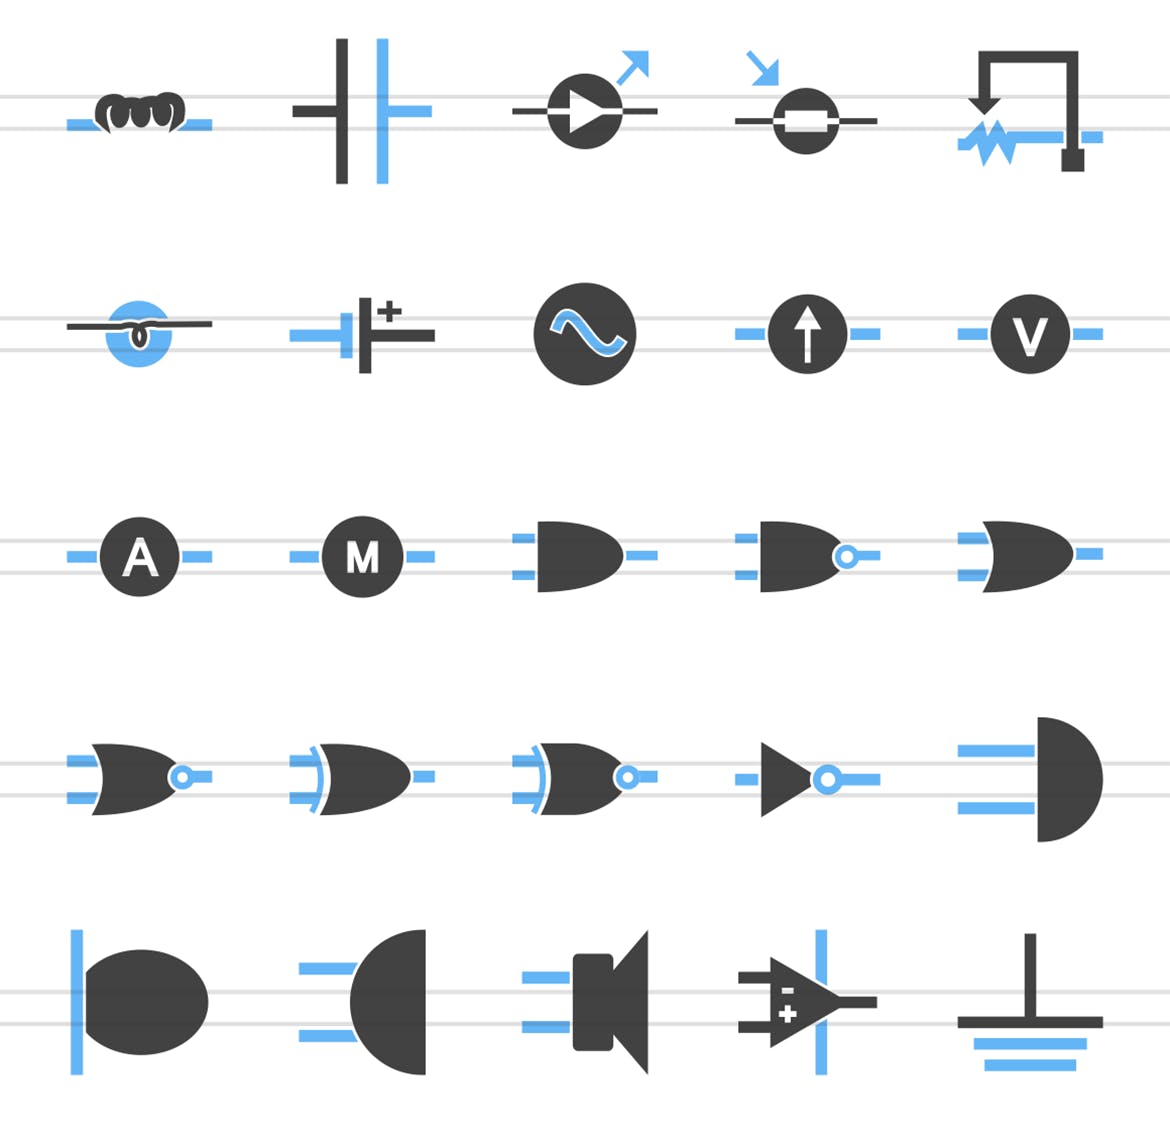 50枚电路线路板主题蓝黑色矢量第一素材精选图标 50 Electric Circuits Blue & Black Icons插图(2)